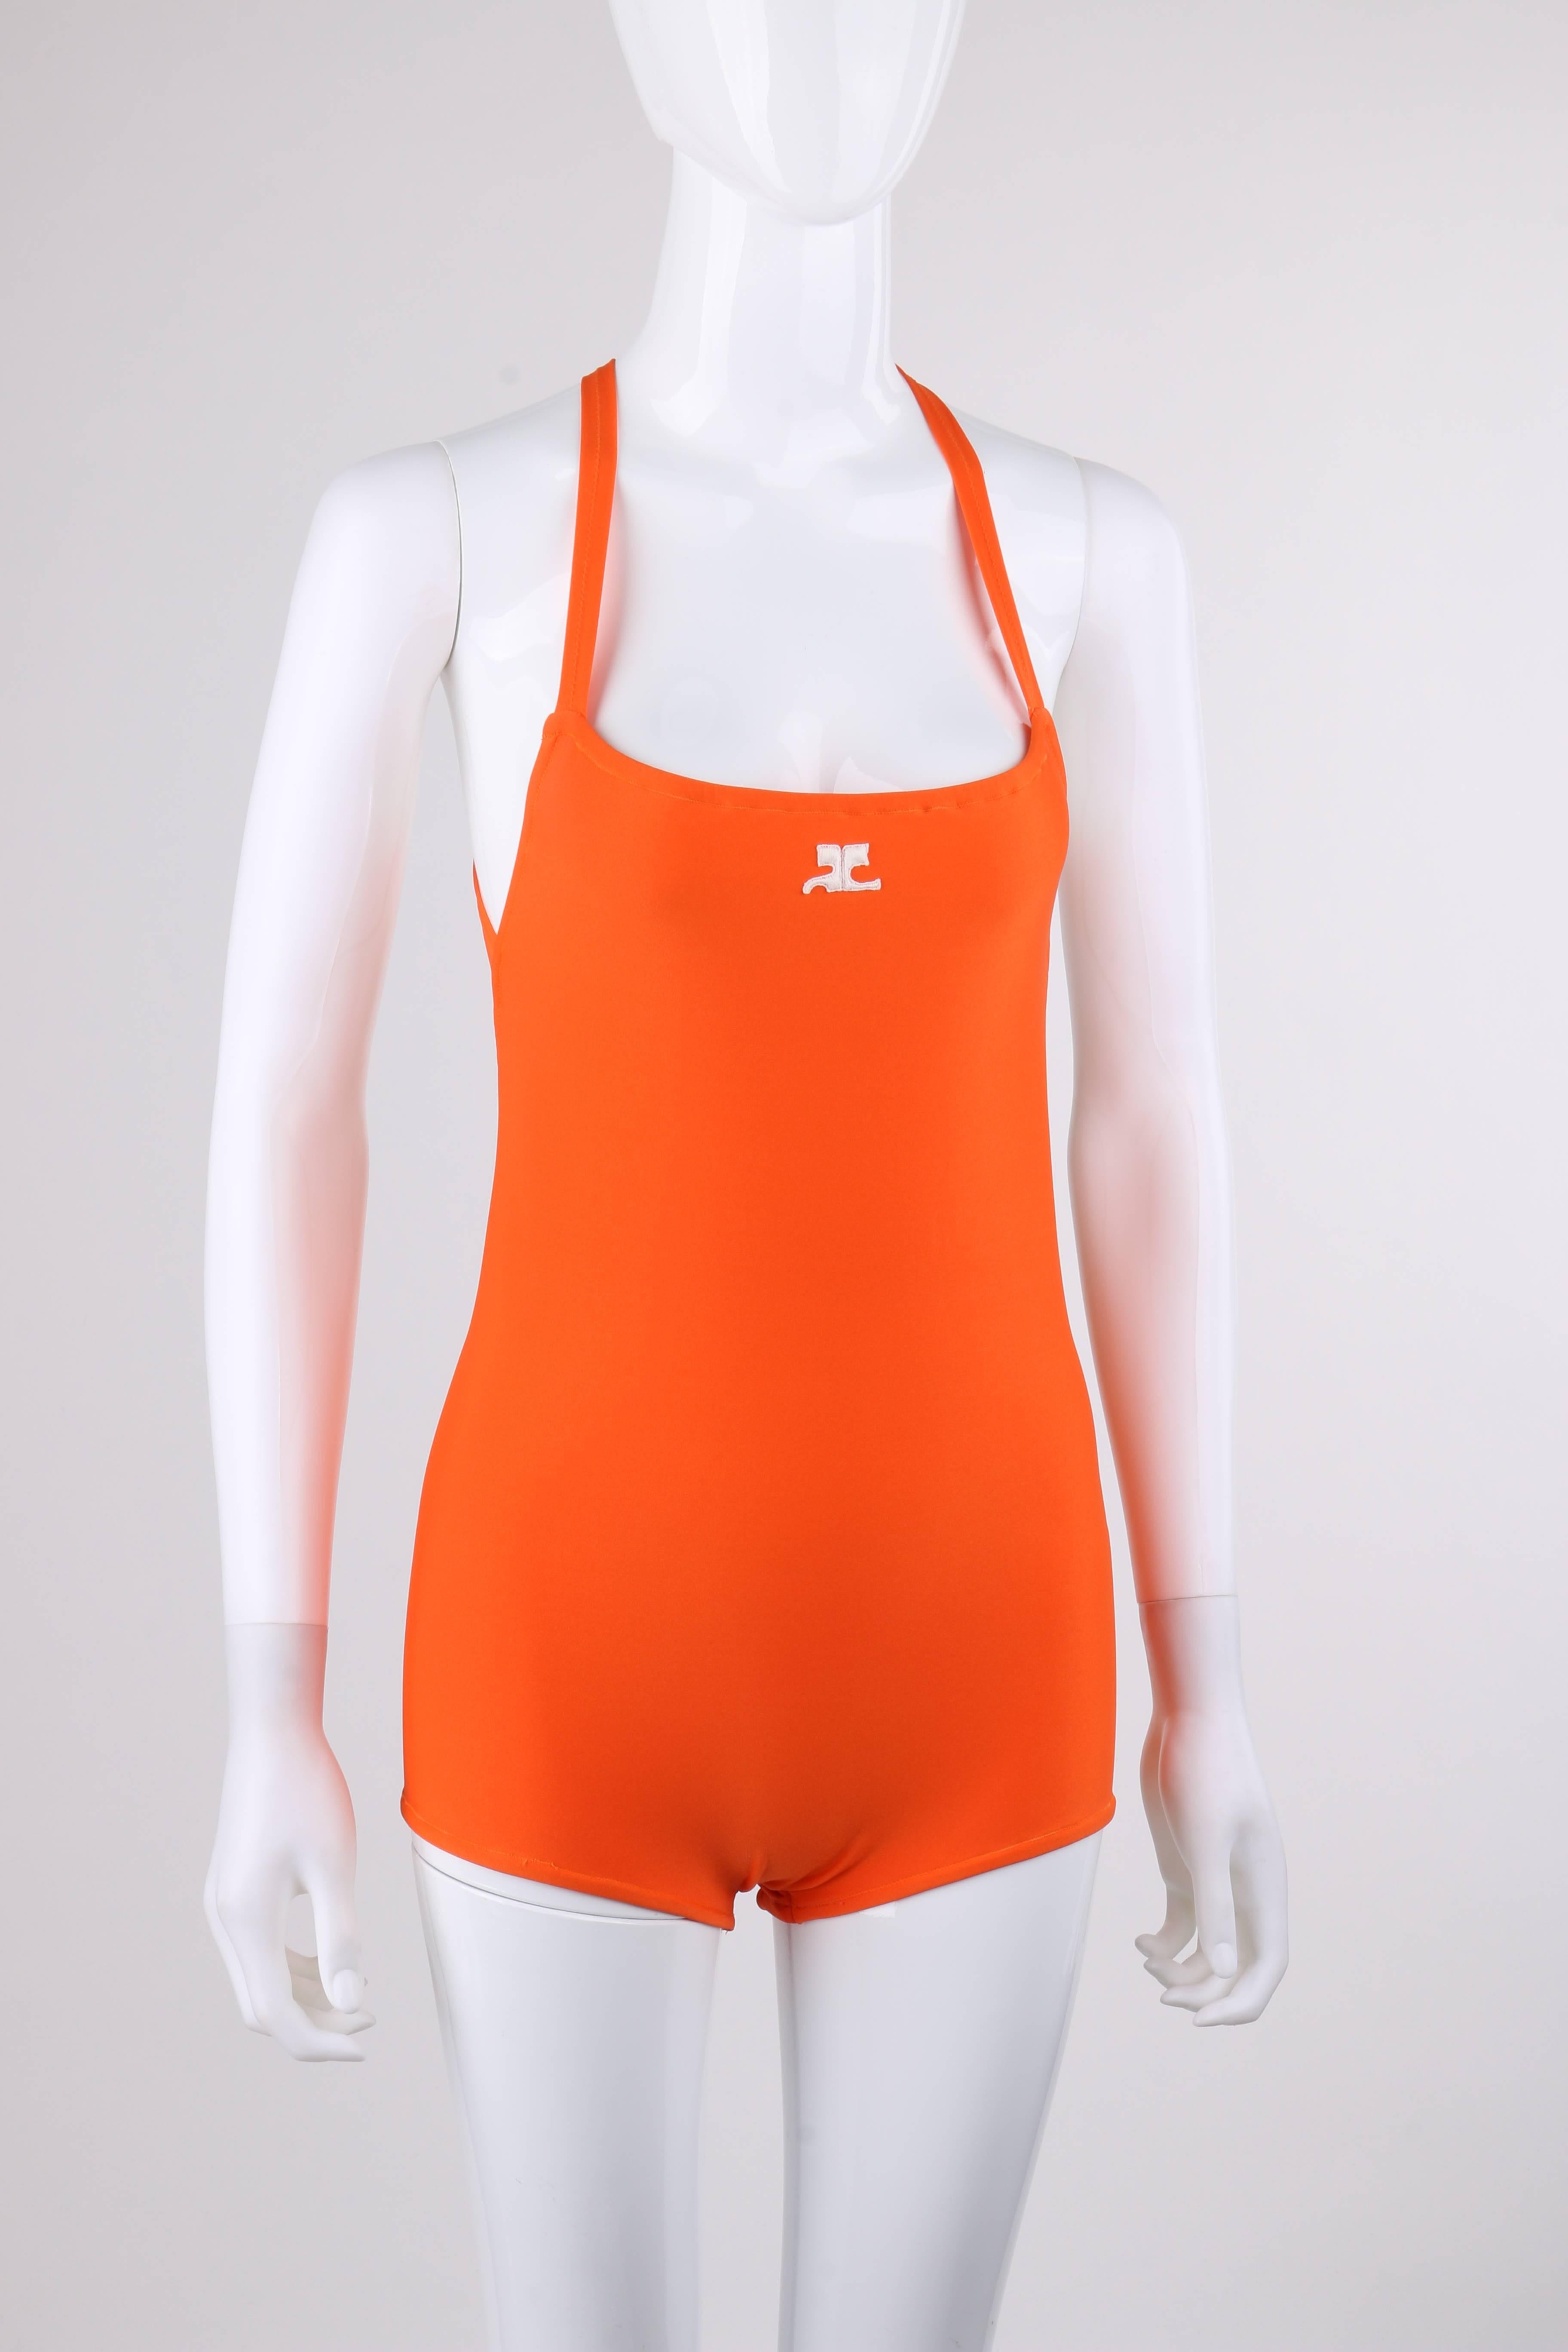 Vintage Courreges c.1960's orange criss-cross back one piece bathing suit. Designed by Andre Courreges. Square neckline. Center front white Courreges 